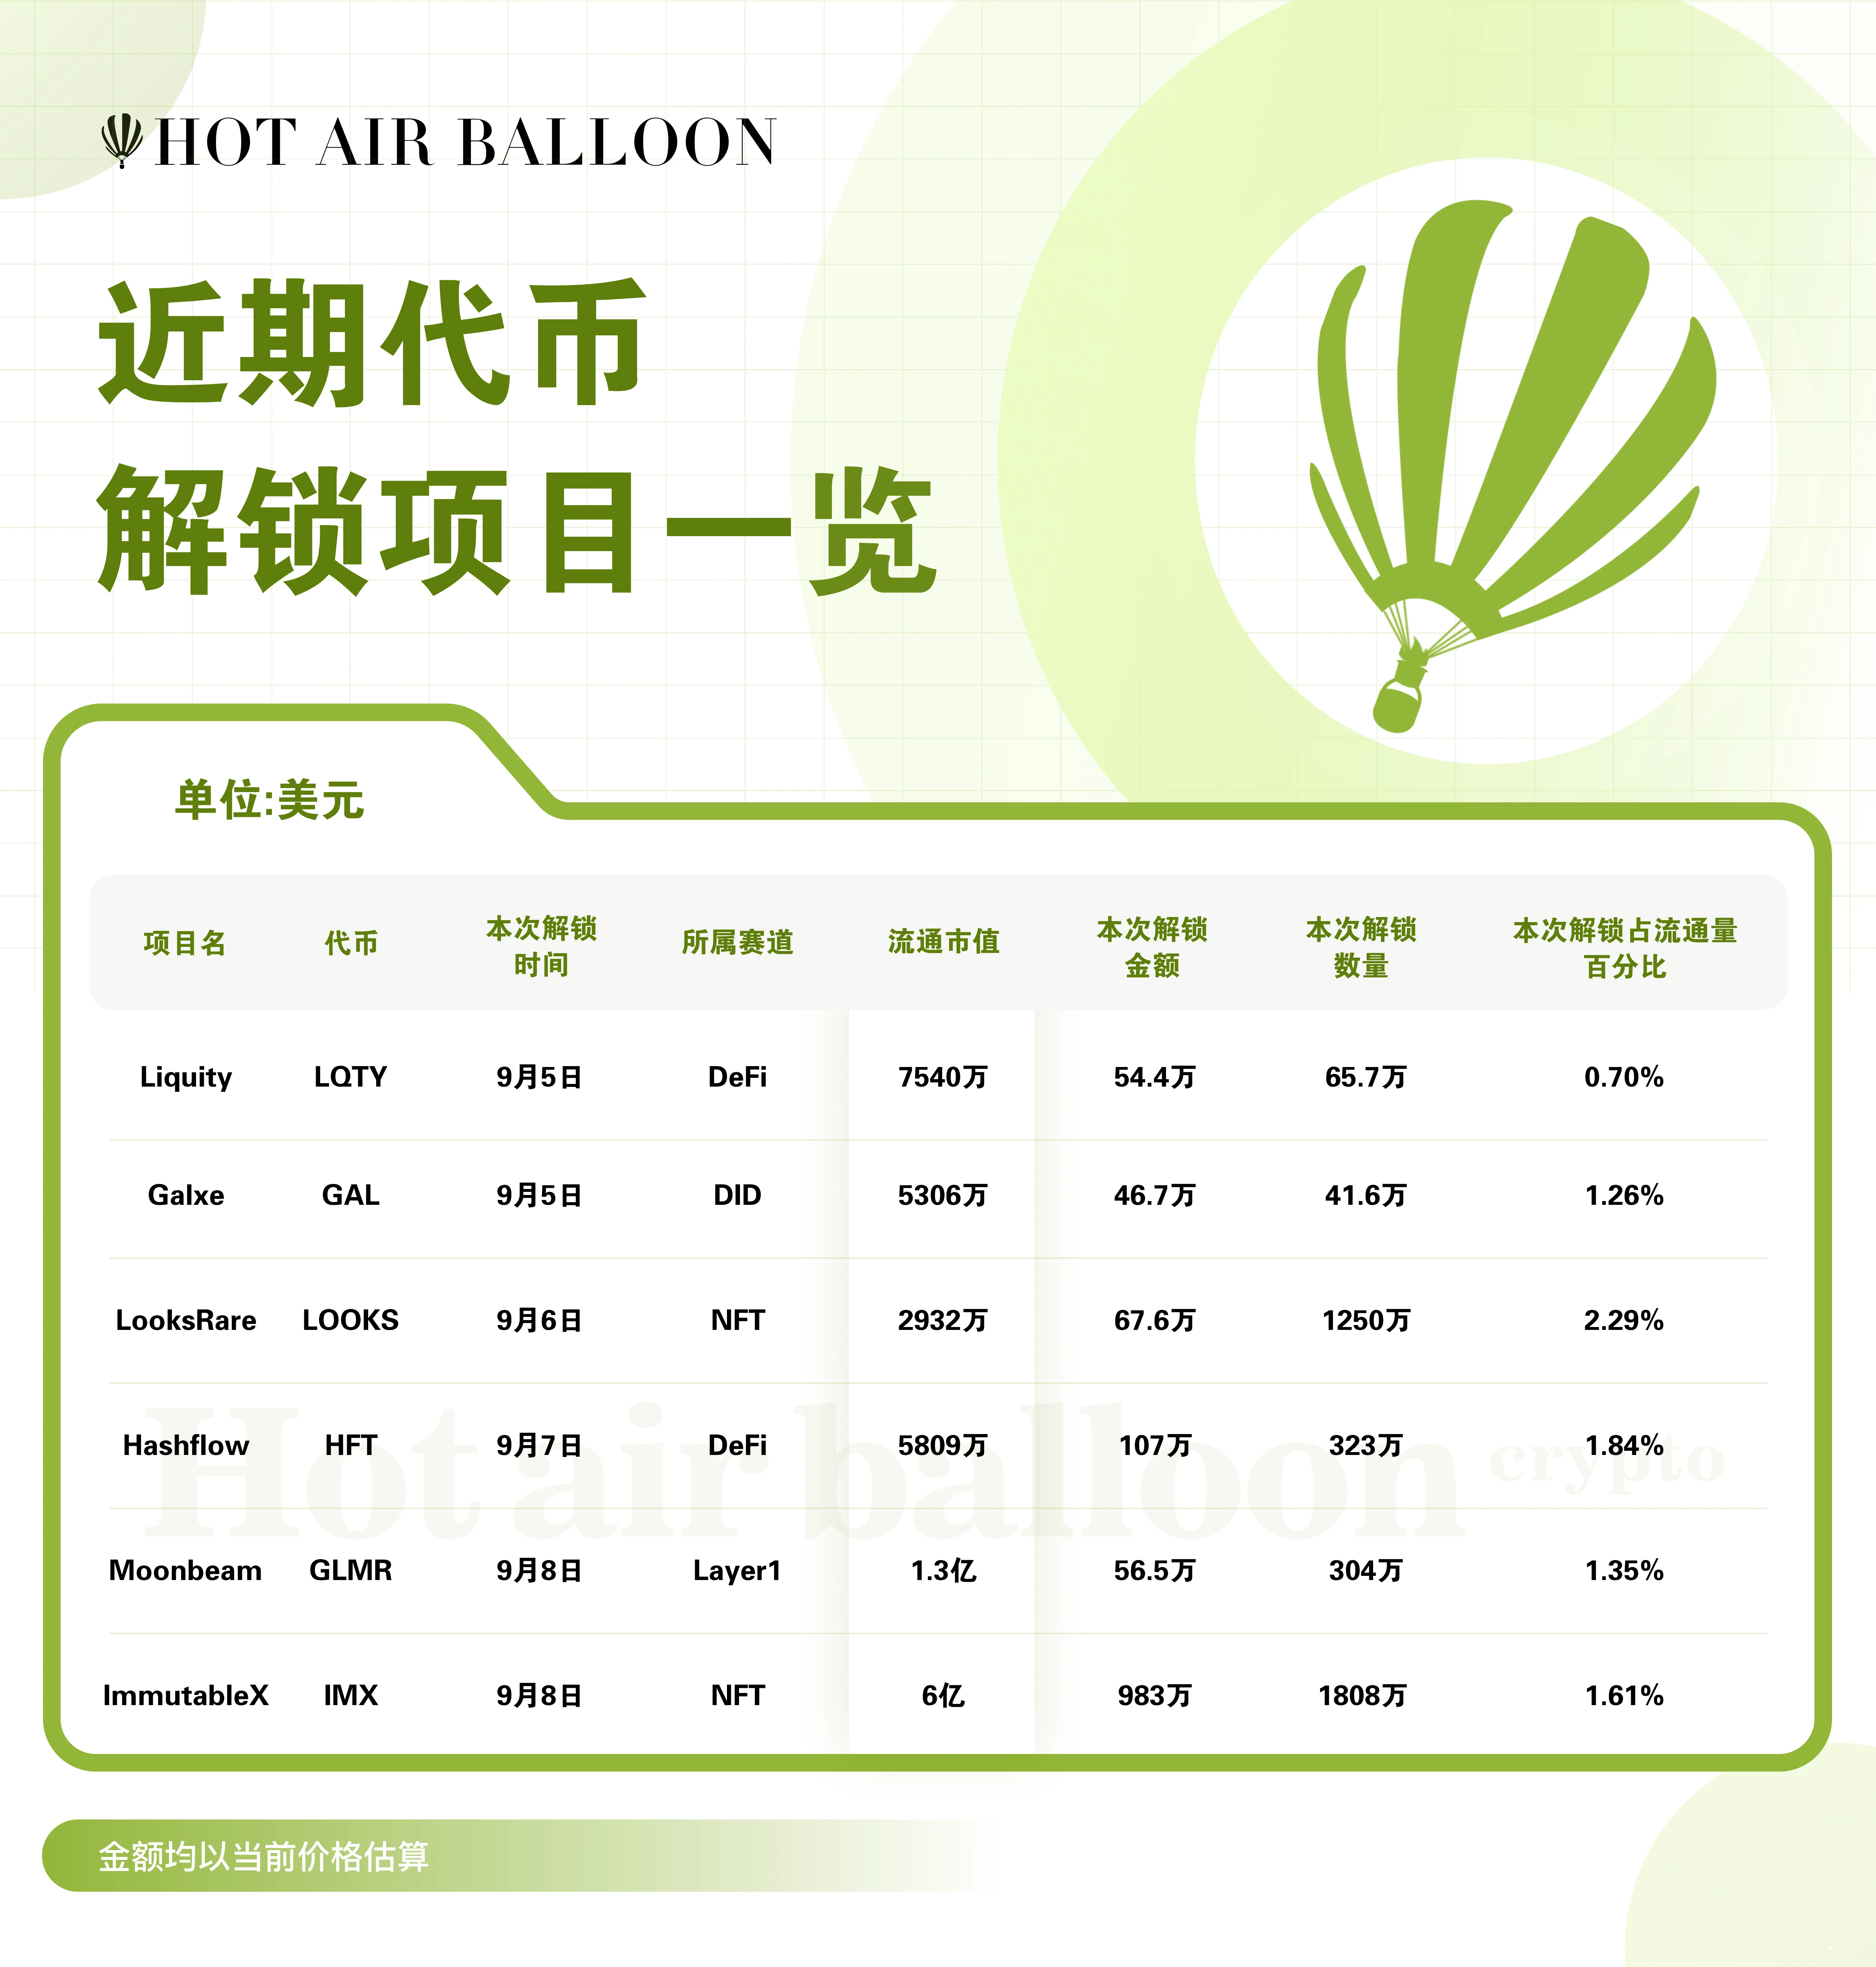 Hotairballoon加密市场周报（8.28–9.3）